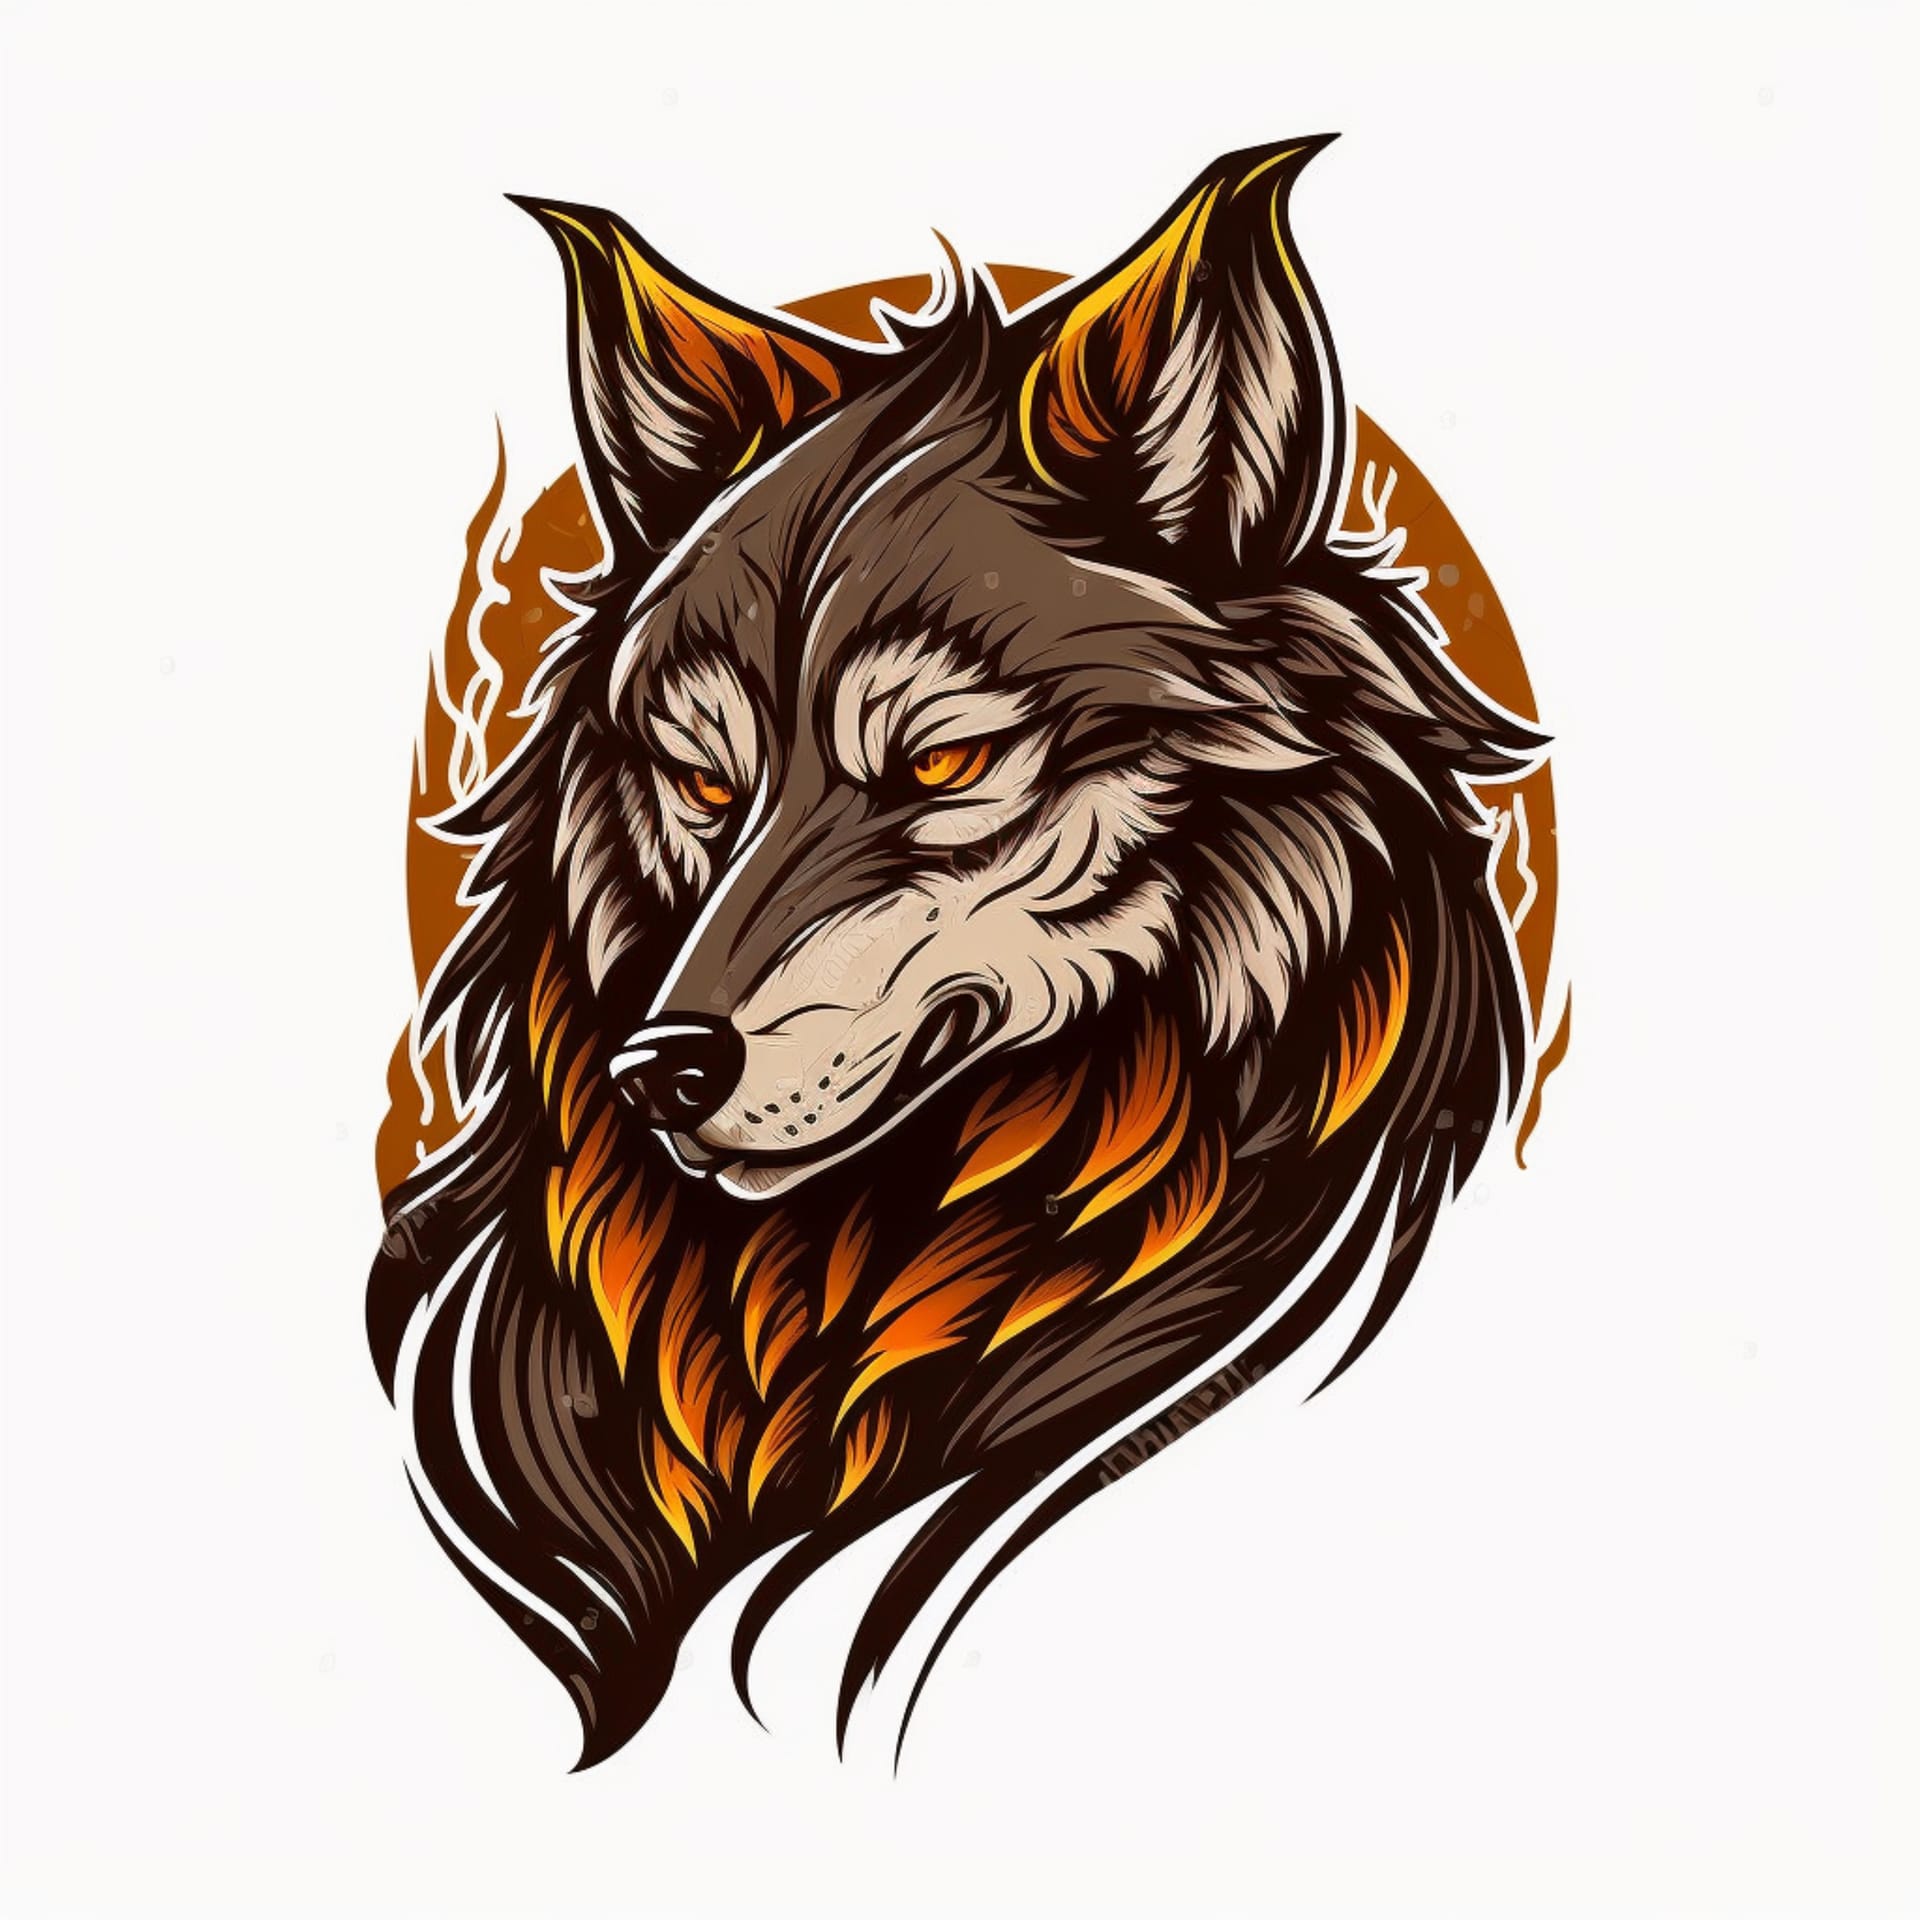 Cool wolf logo illustration captivating image